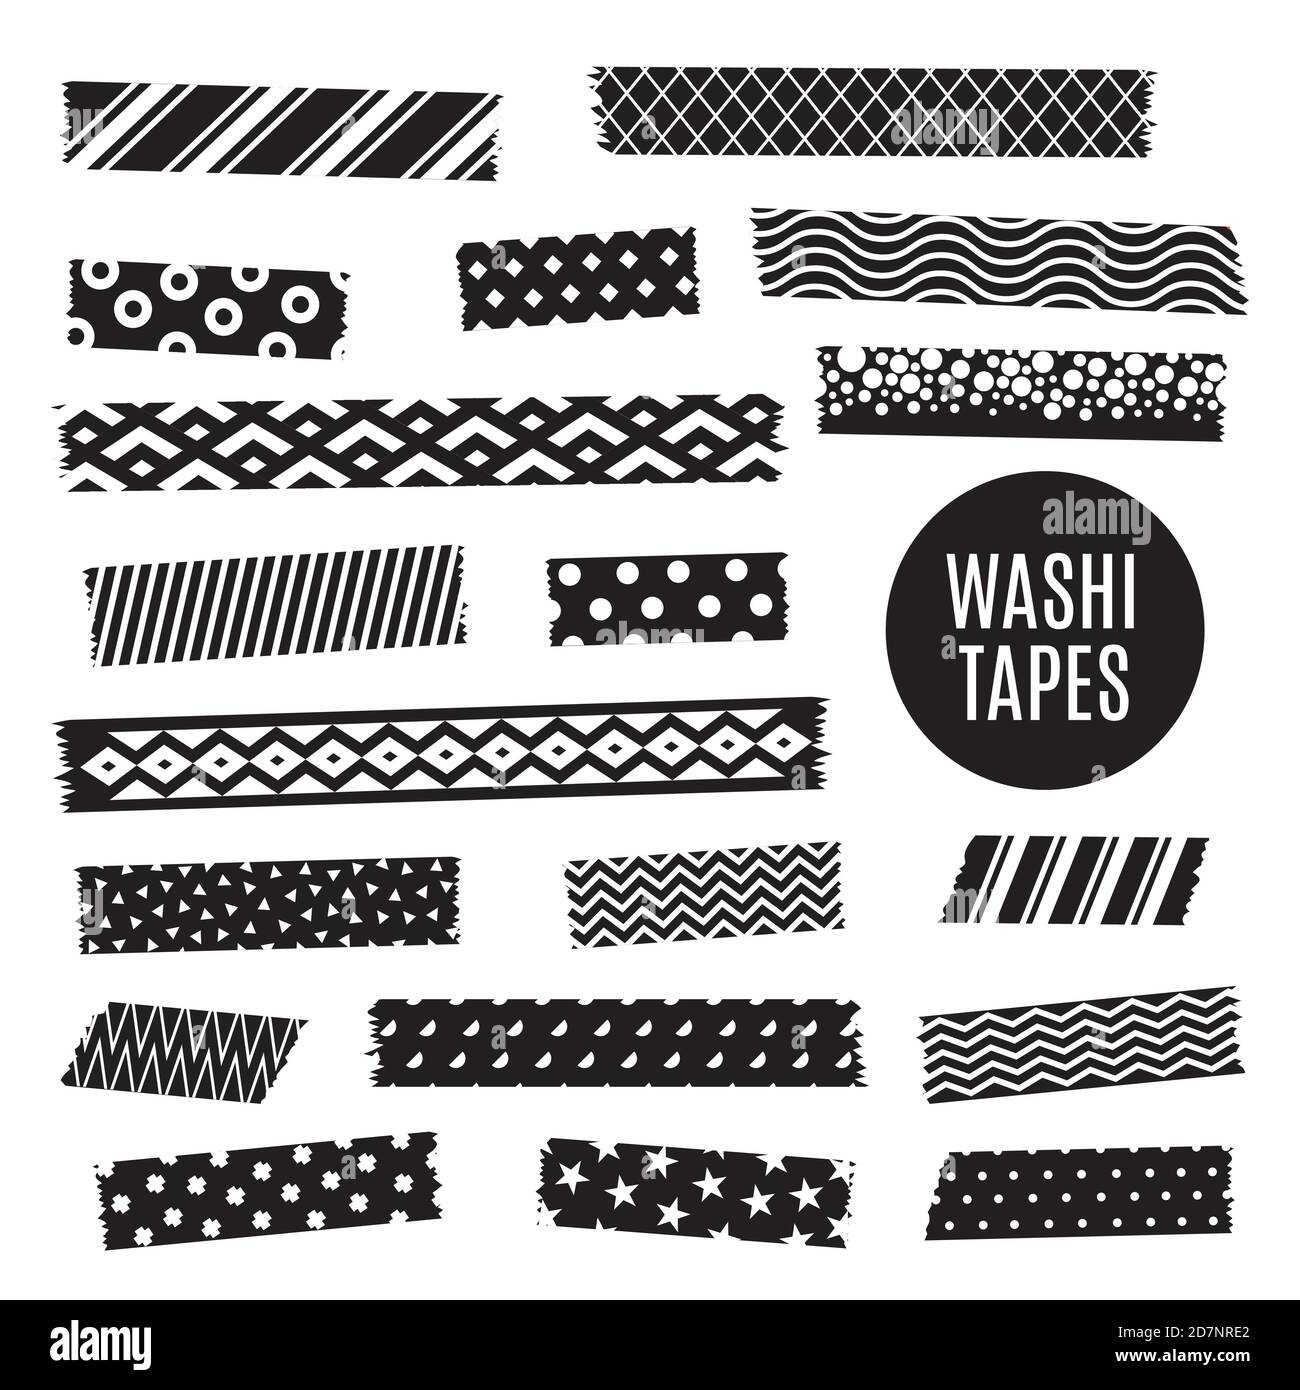 Schwarz und weiß washi Tape Strips, Vektor-Scrapbook-Elemente. Abbildung von washi Band monochrome Scrapbooking, gemusterte Aufkleber Stock Vektor